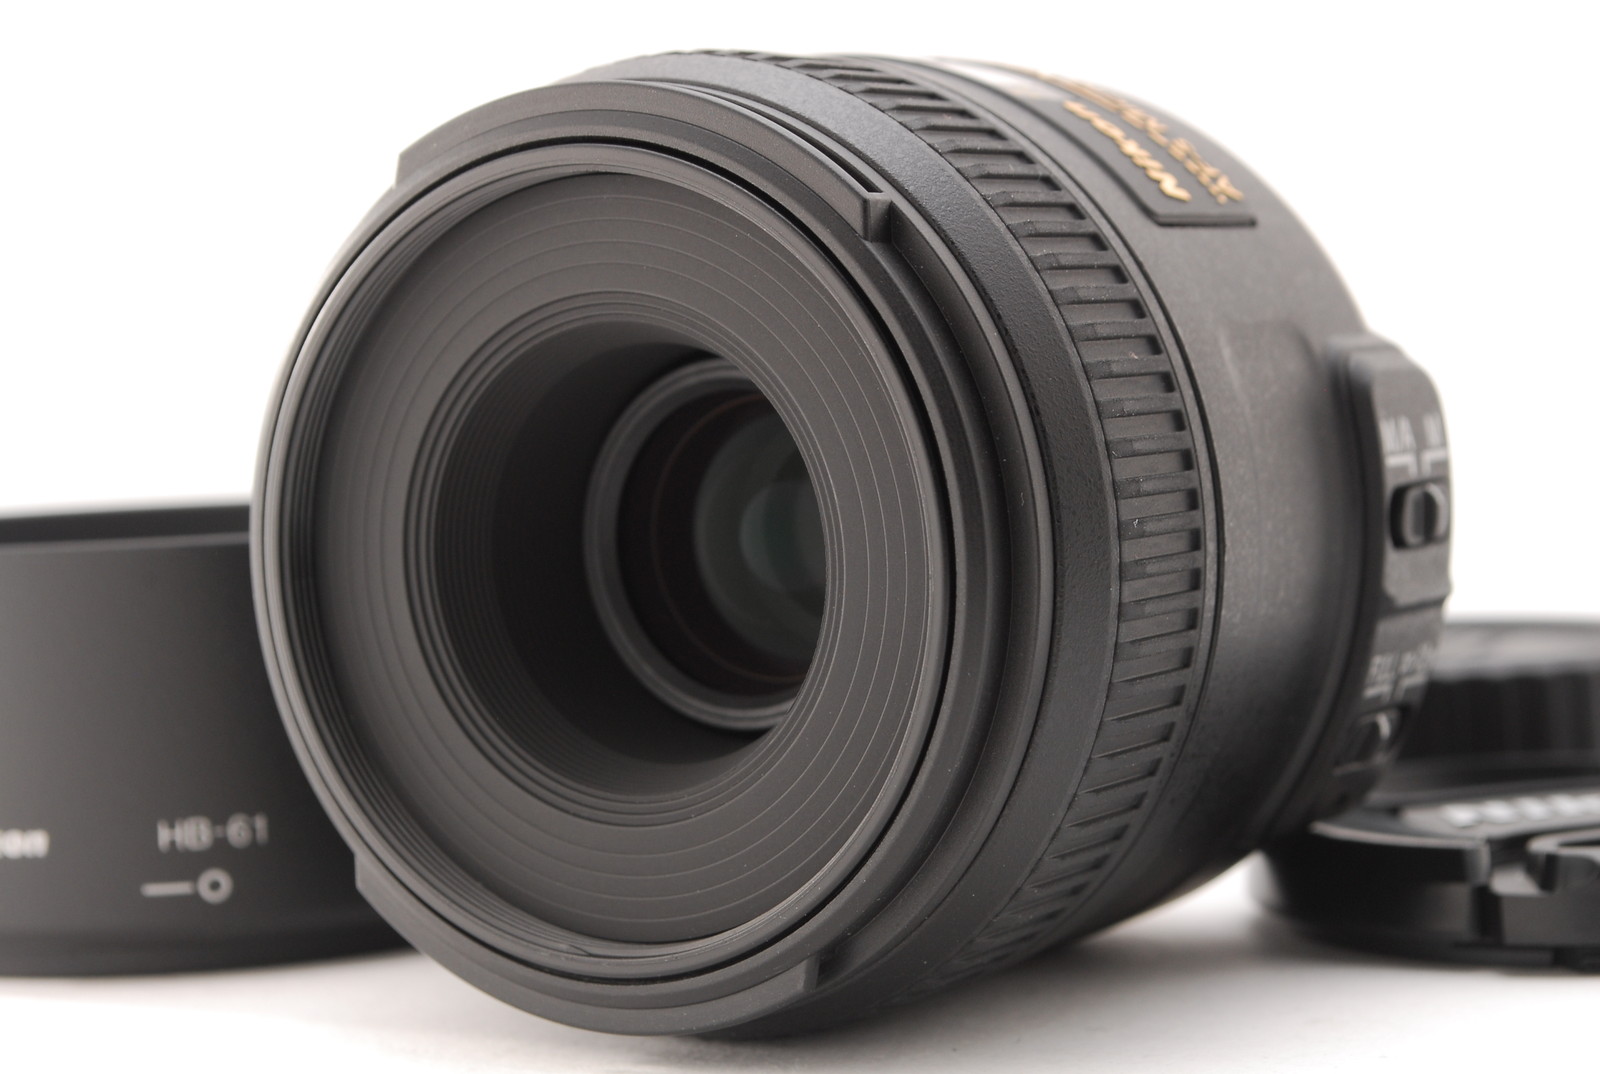 PROMOTION.😊 TOP MINT Nikon AF-S DX Micro Nikkor 40mm f/2.8G Lens, Caps, Hood from Japan